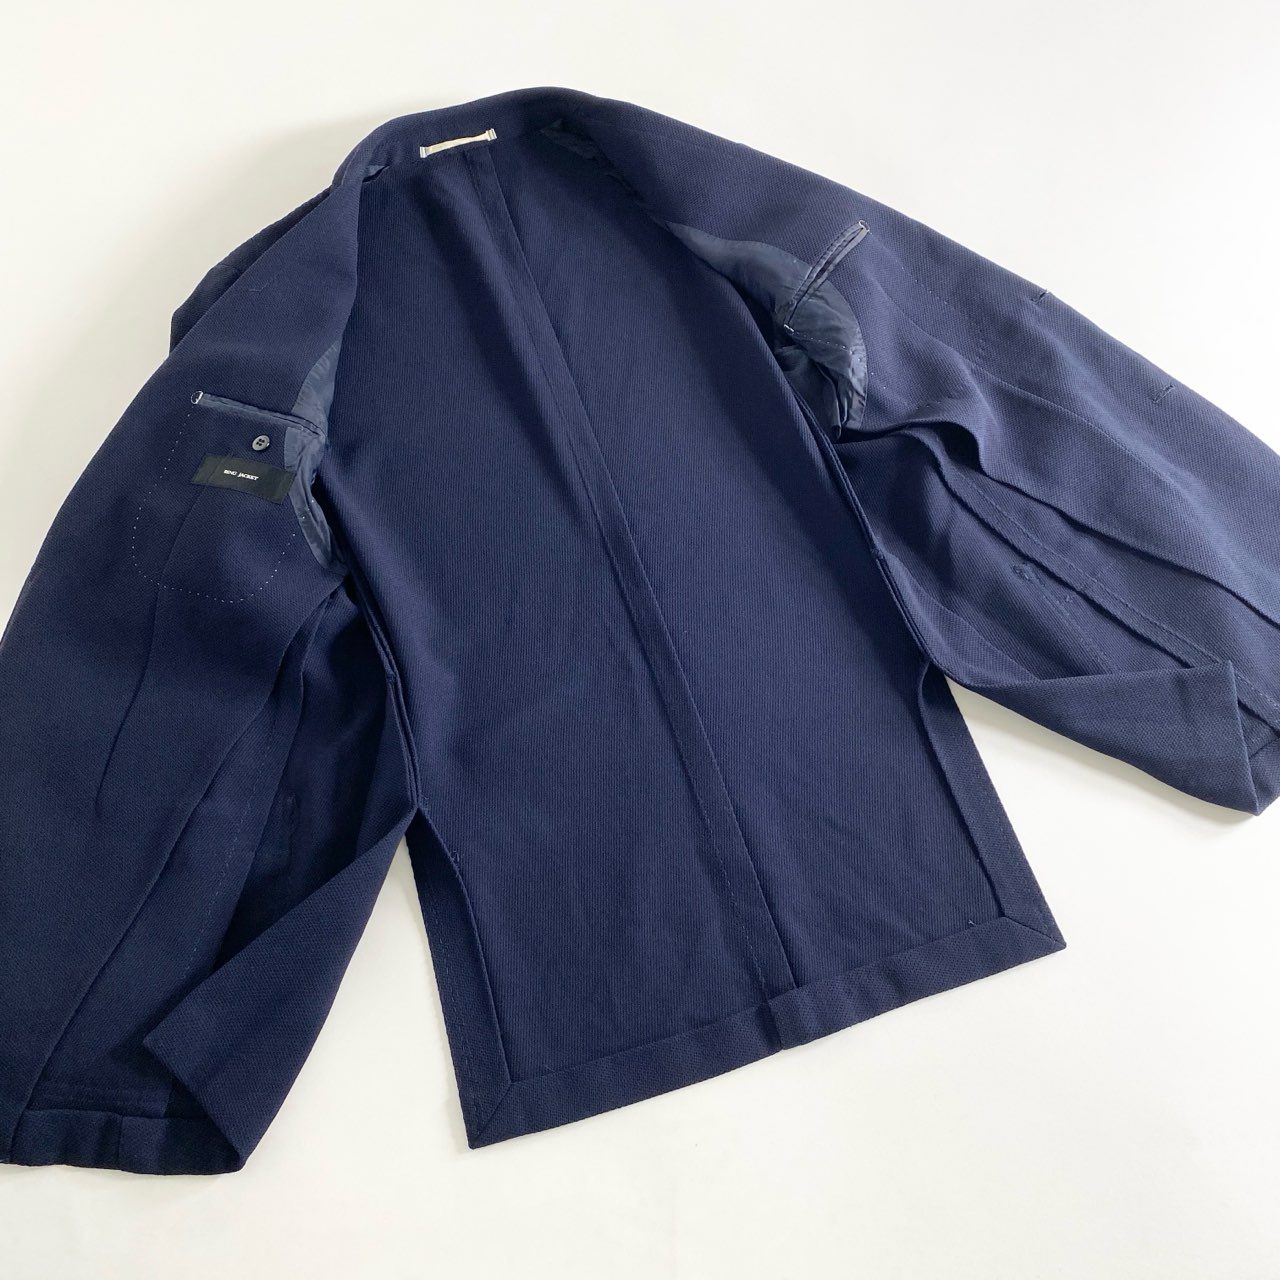 5b26 日本製 RING JACKET リングヂャケット テーラードジャケット スーツジャケット 50 ネイビー ビジネス トップス 上着 メンズ